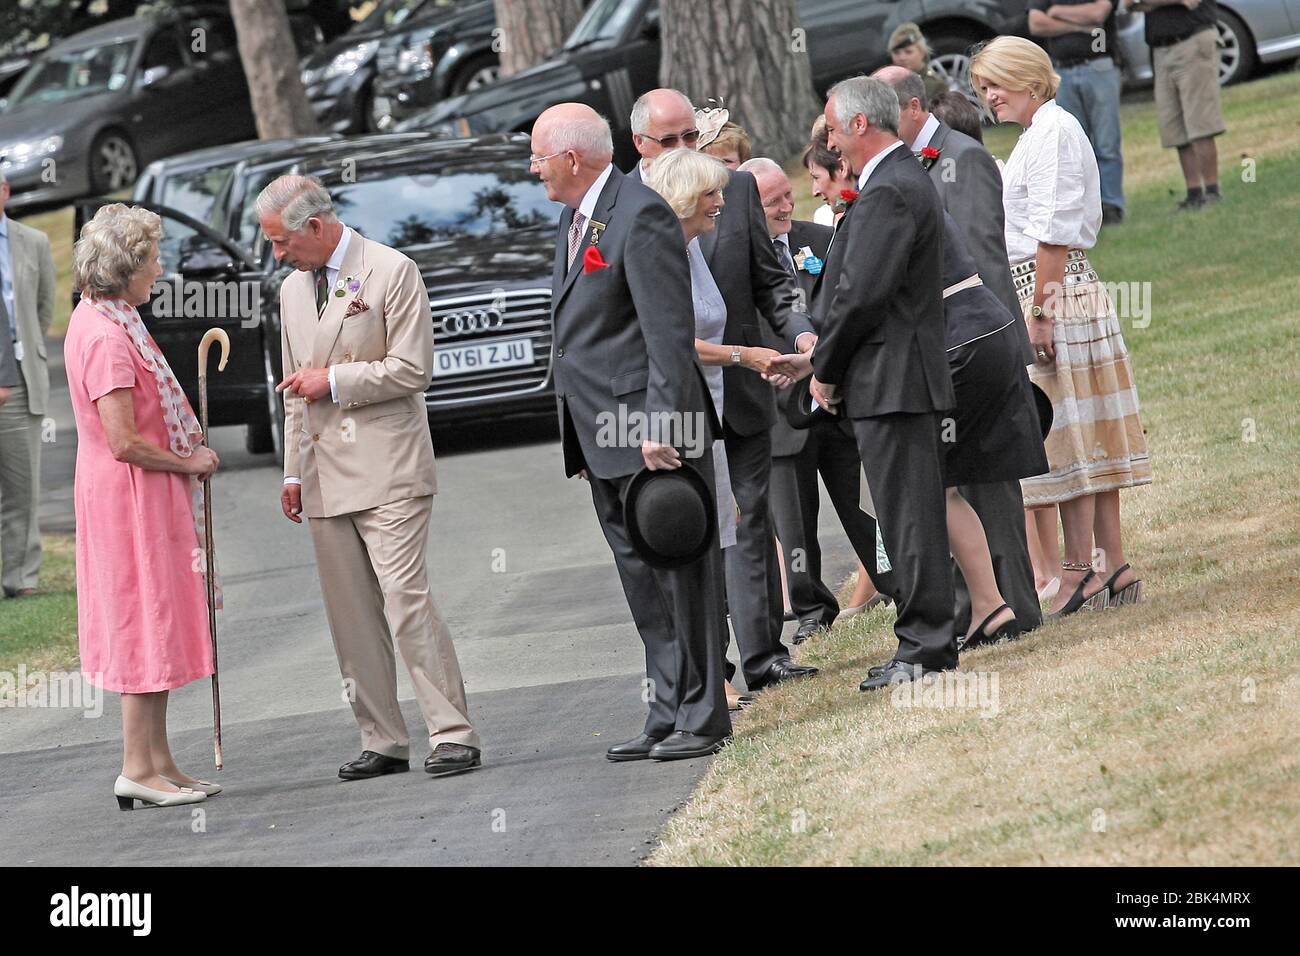 Le Prince Charles et la duchesse de Cornwall, visitez le Thr Royal Welsh Show, Llanelwedd , Pays de Galles, le 29 juillet 2013. Partie de la visite d'été du Prince Charles Banque D'Images